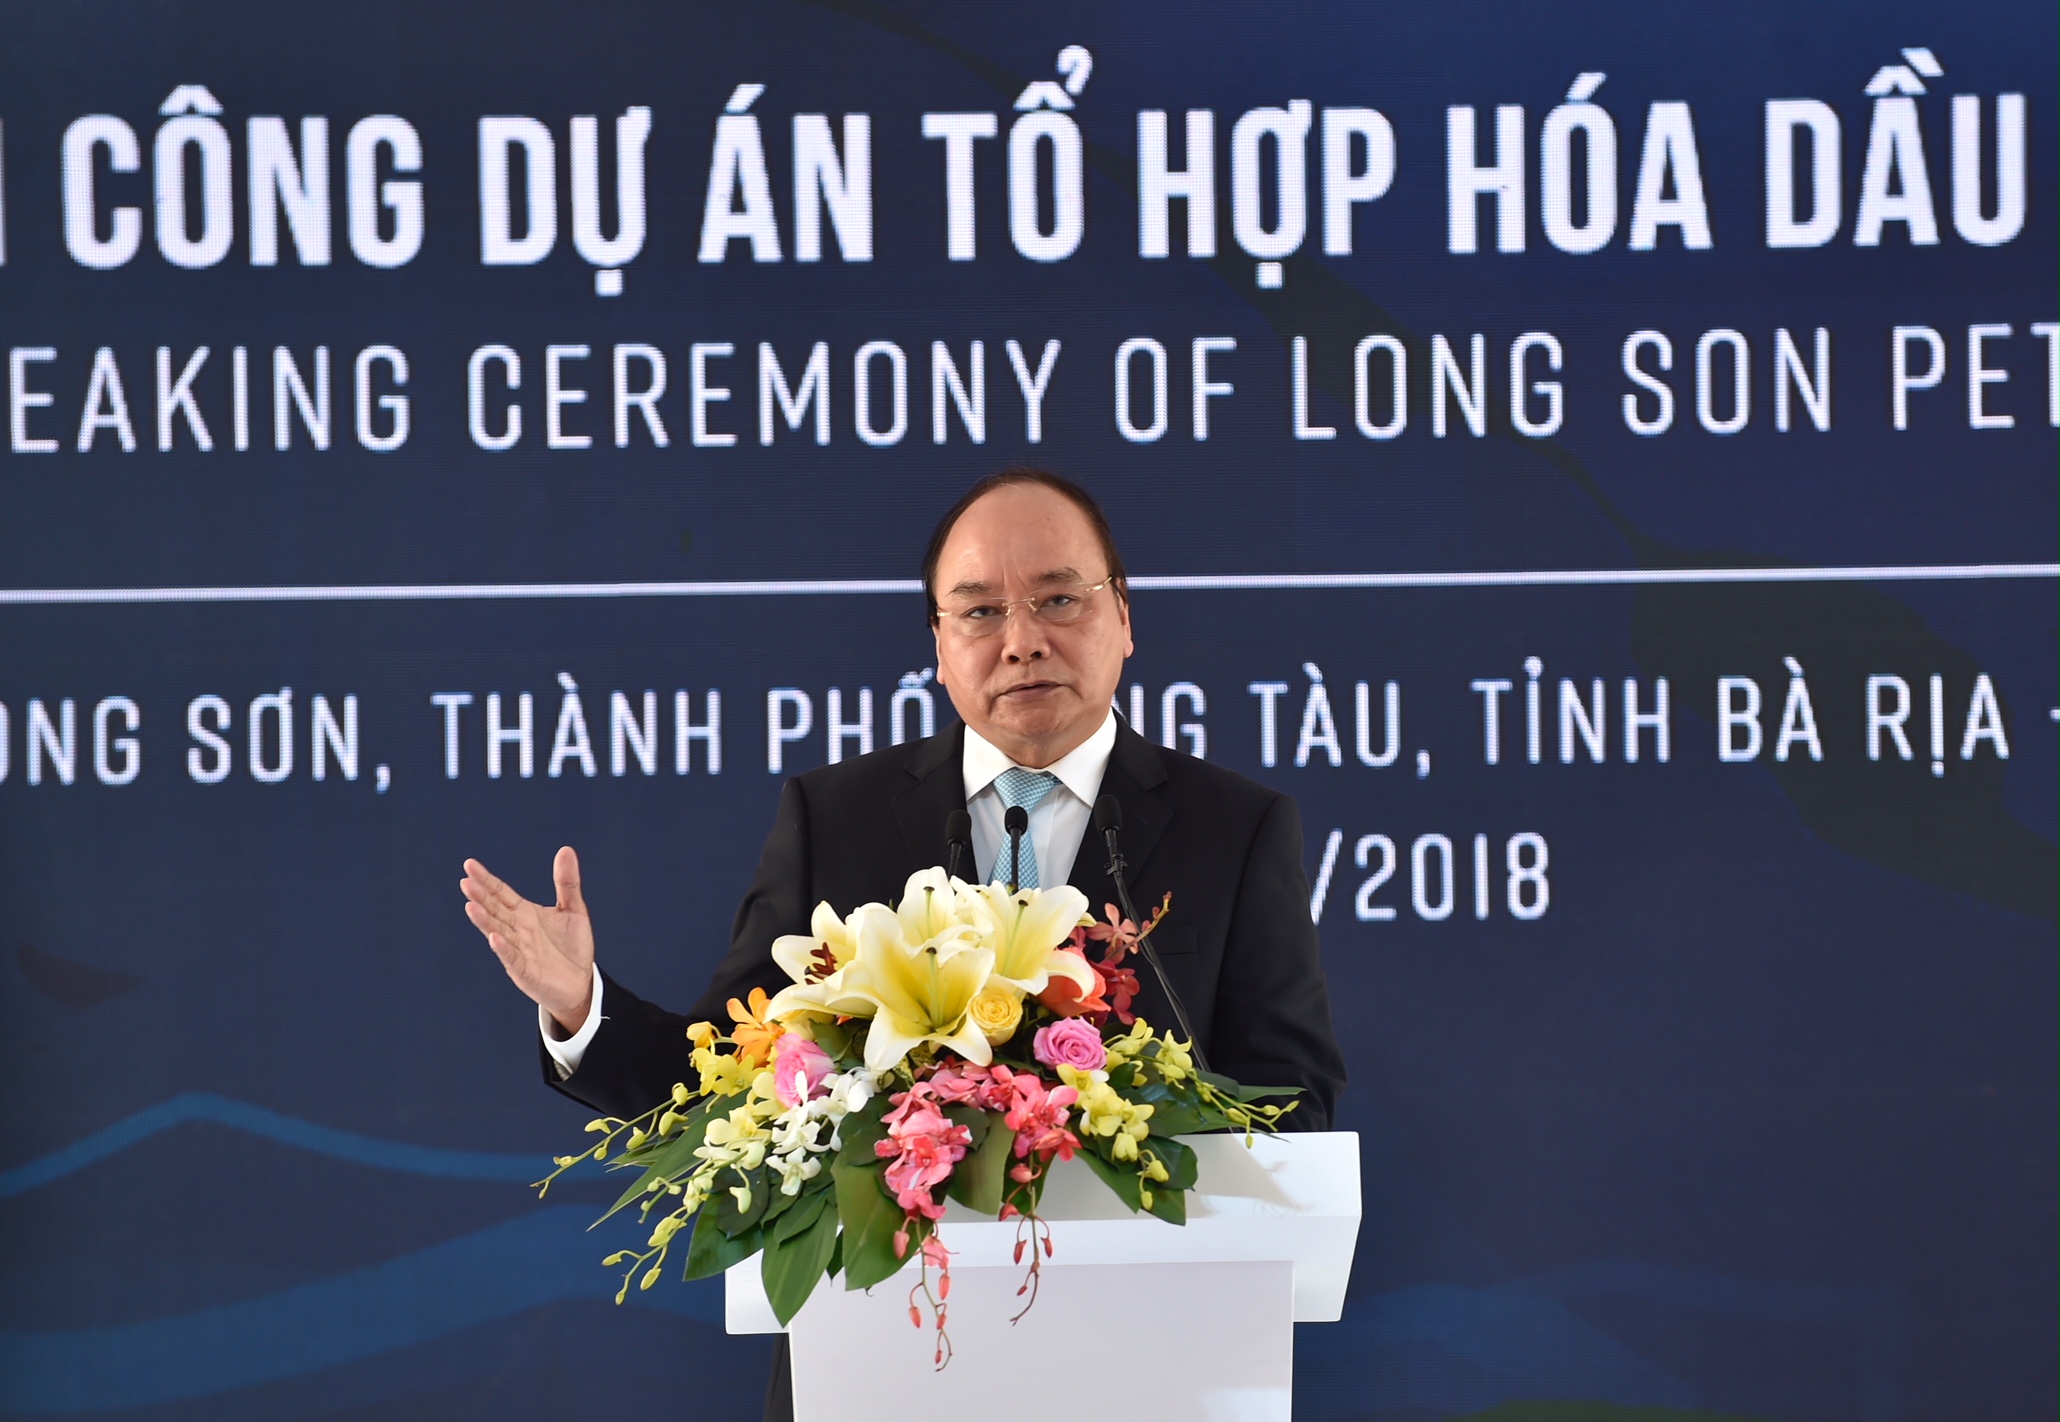 Thủ tướng dự Lễ khởi công tổ hợp hóa dầu Long Sơn